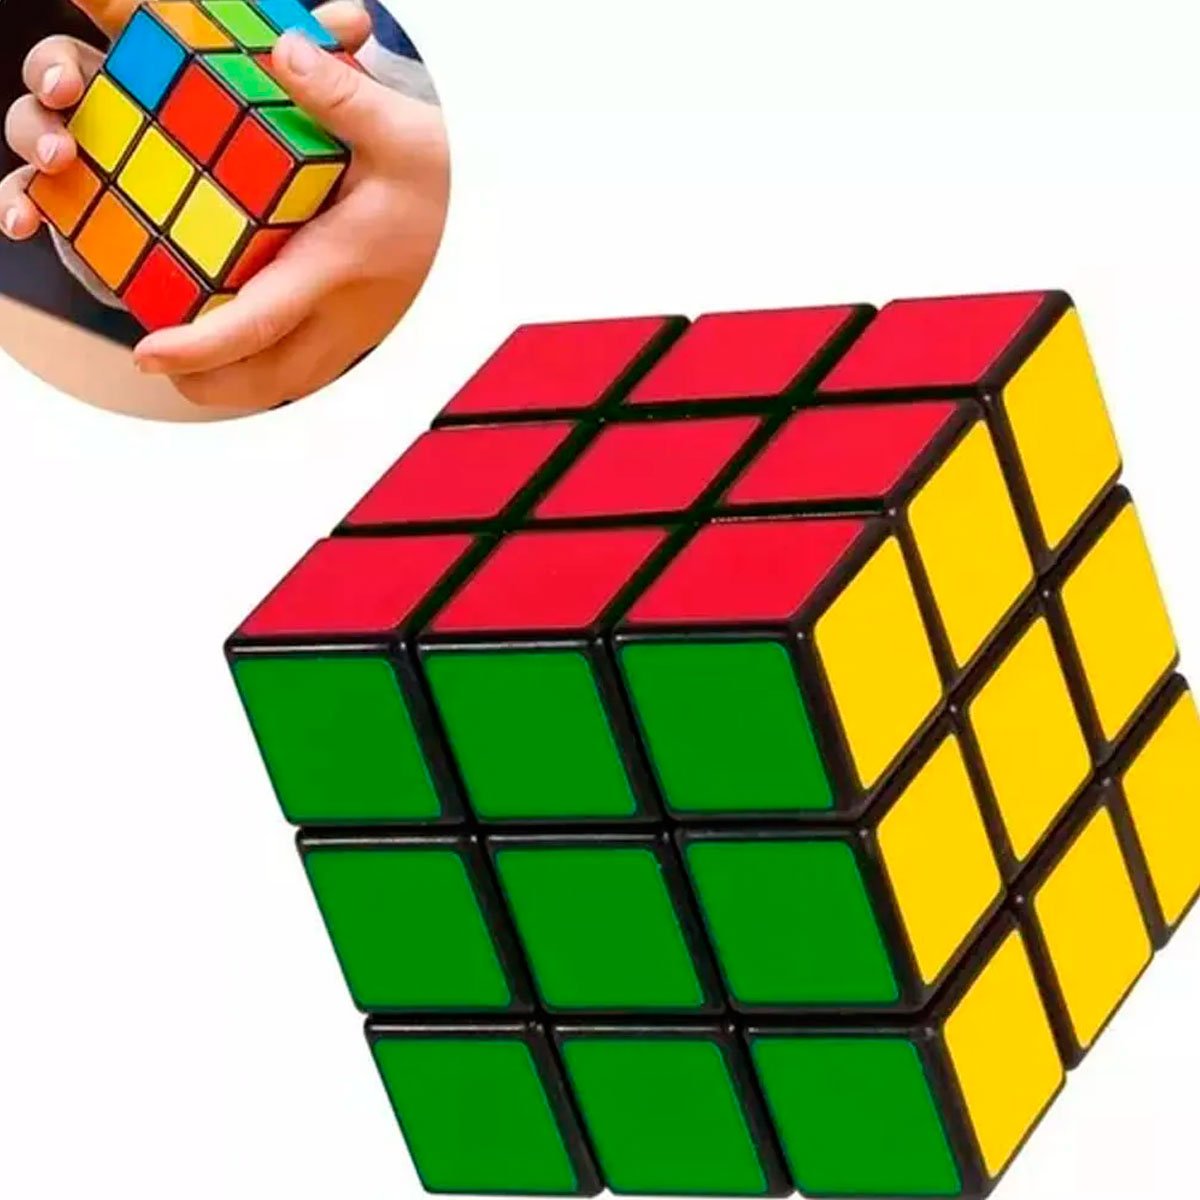 cubo magico 3x3x3 brinquedo interativo classico